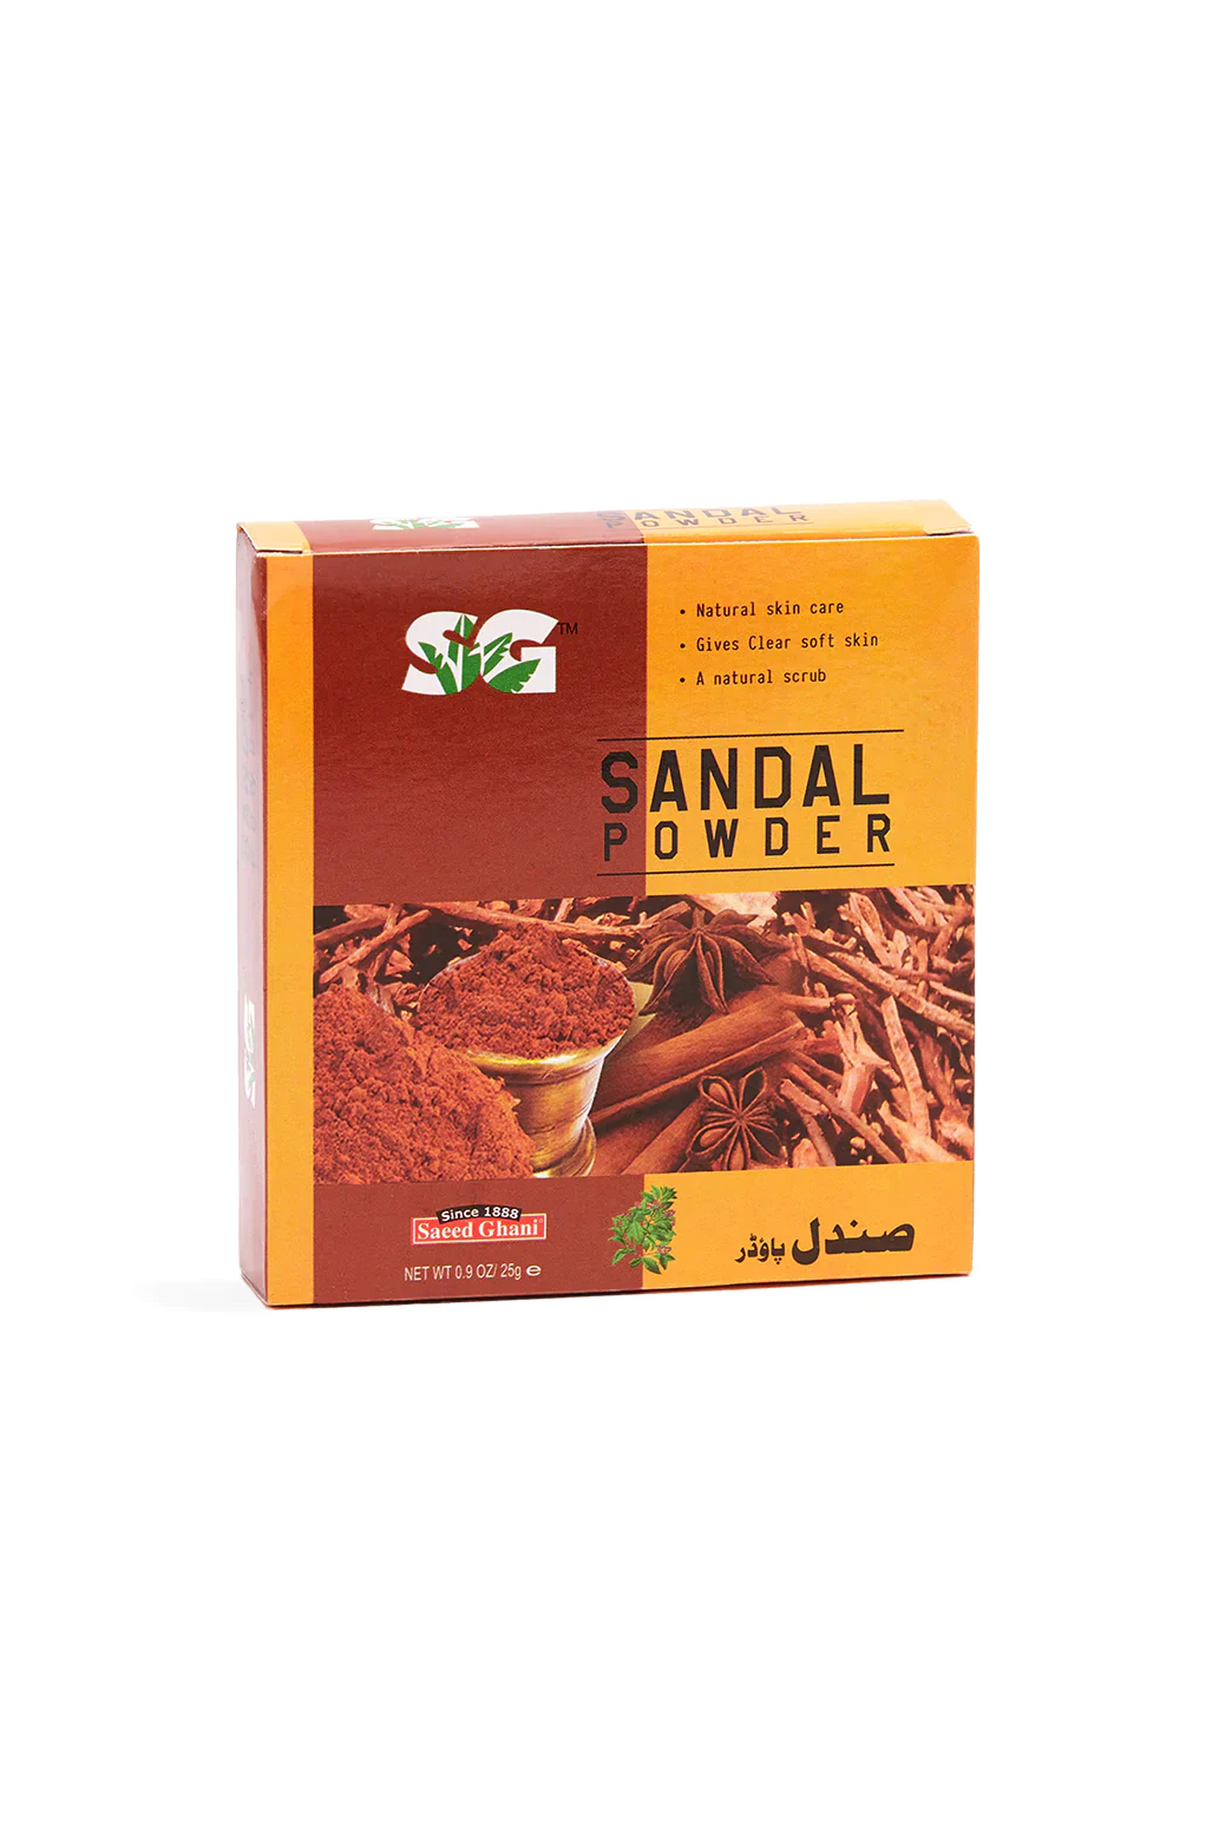 saeed ghani sandal powder 25g